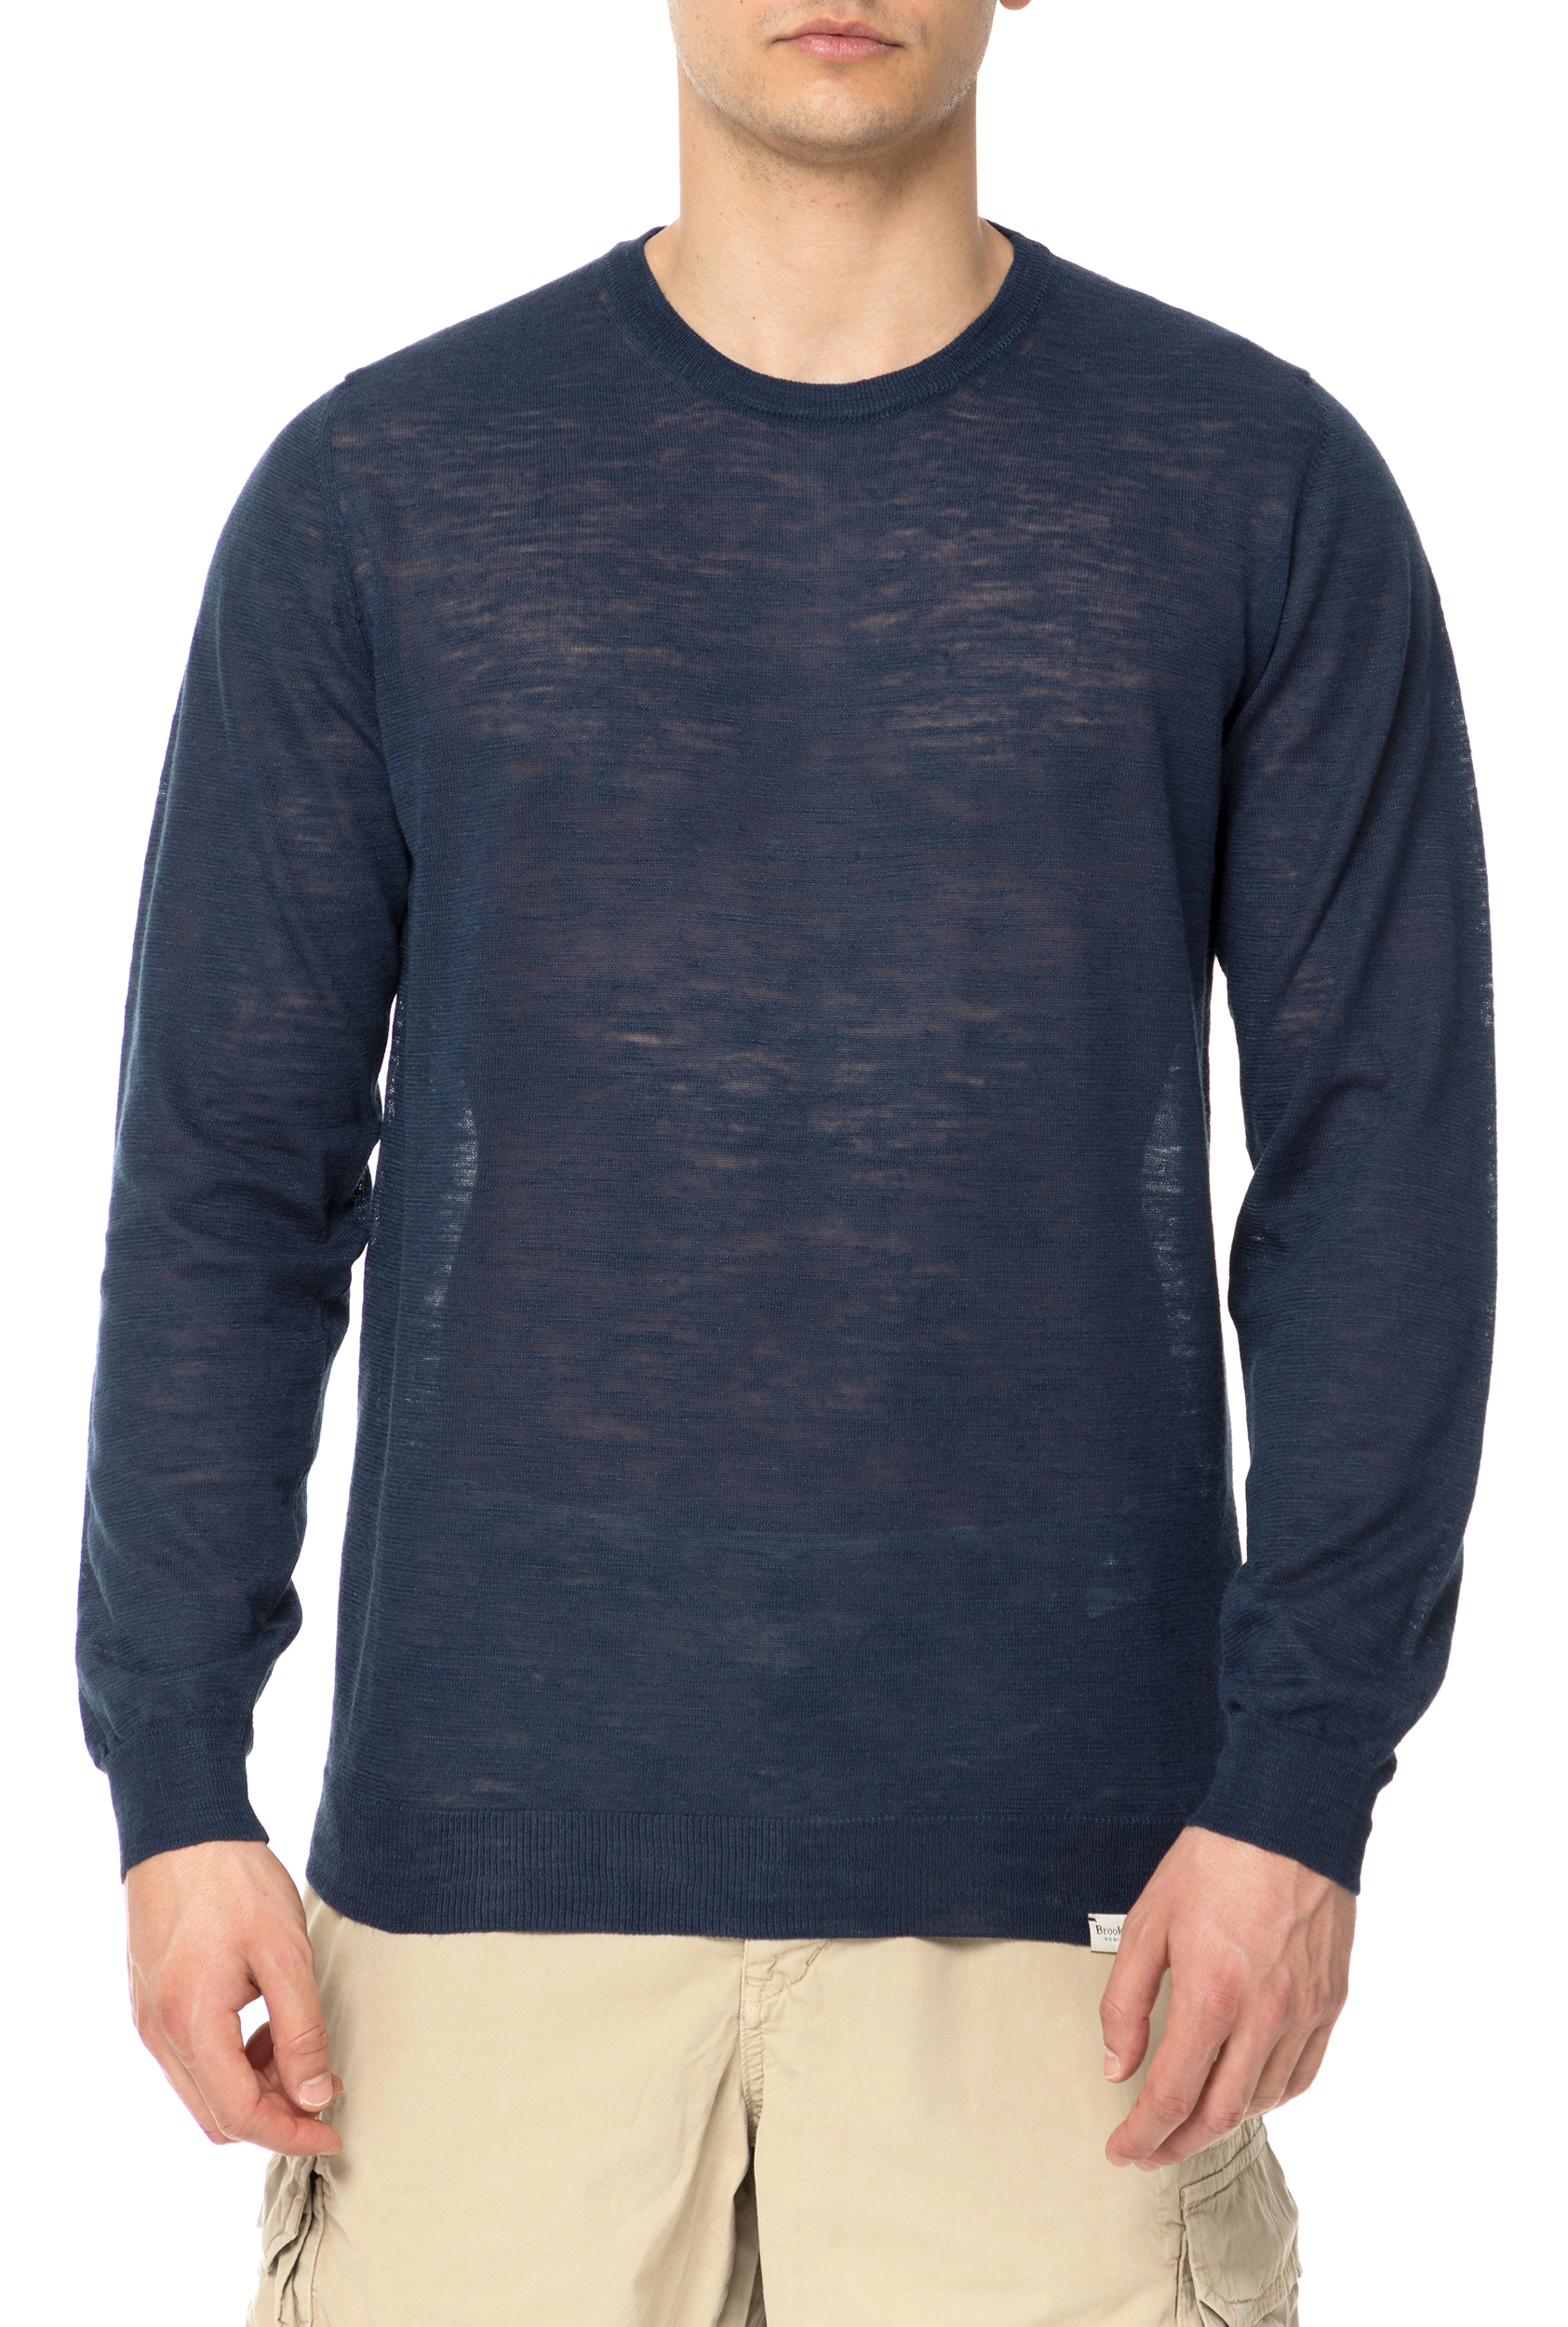 Ανδρικά/Ρούχα/Μπλούζες/Μακρυμάνικες BROOKSFIELD - Ανδρική μακρυμάνικη μπλούζα BROOKSFIELD μπλε